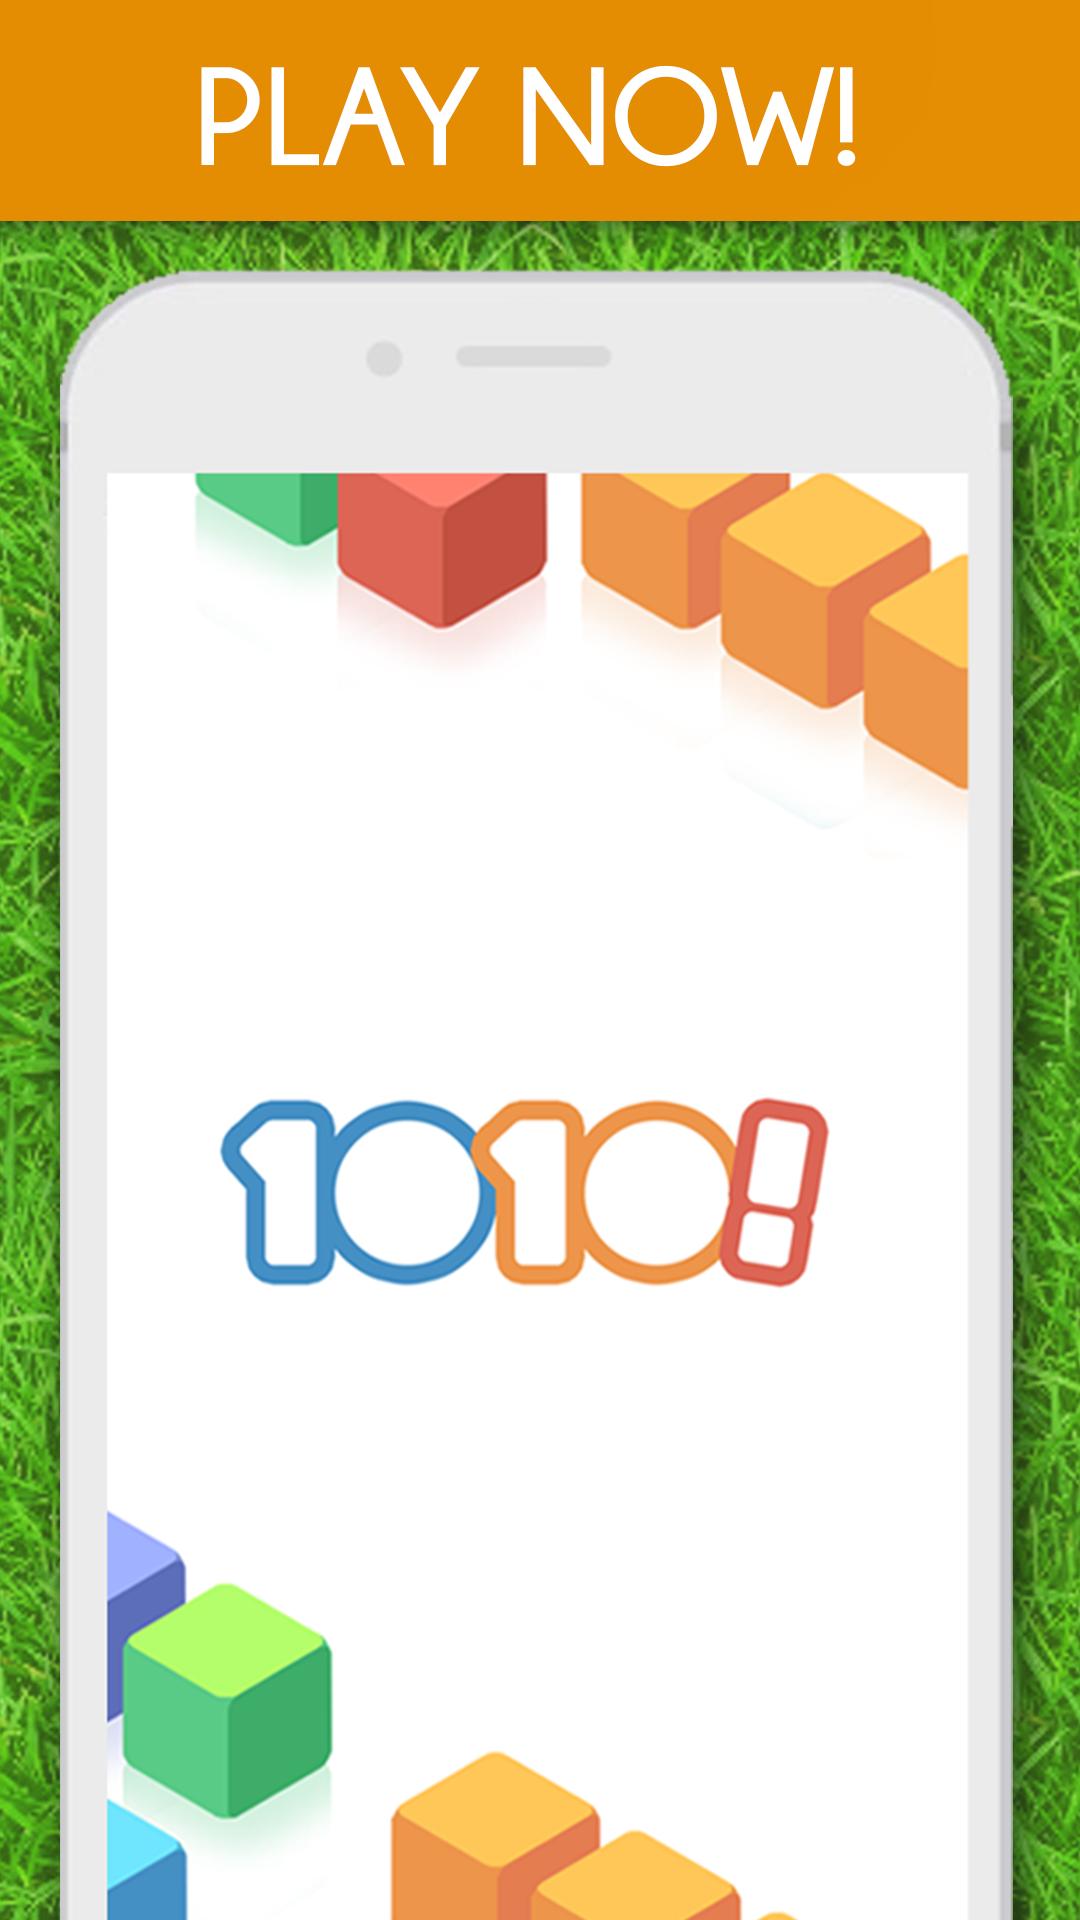 1010! Block Puzzle Game 68.8.0 Screenshot 5